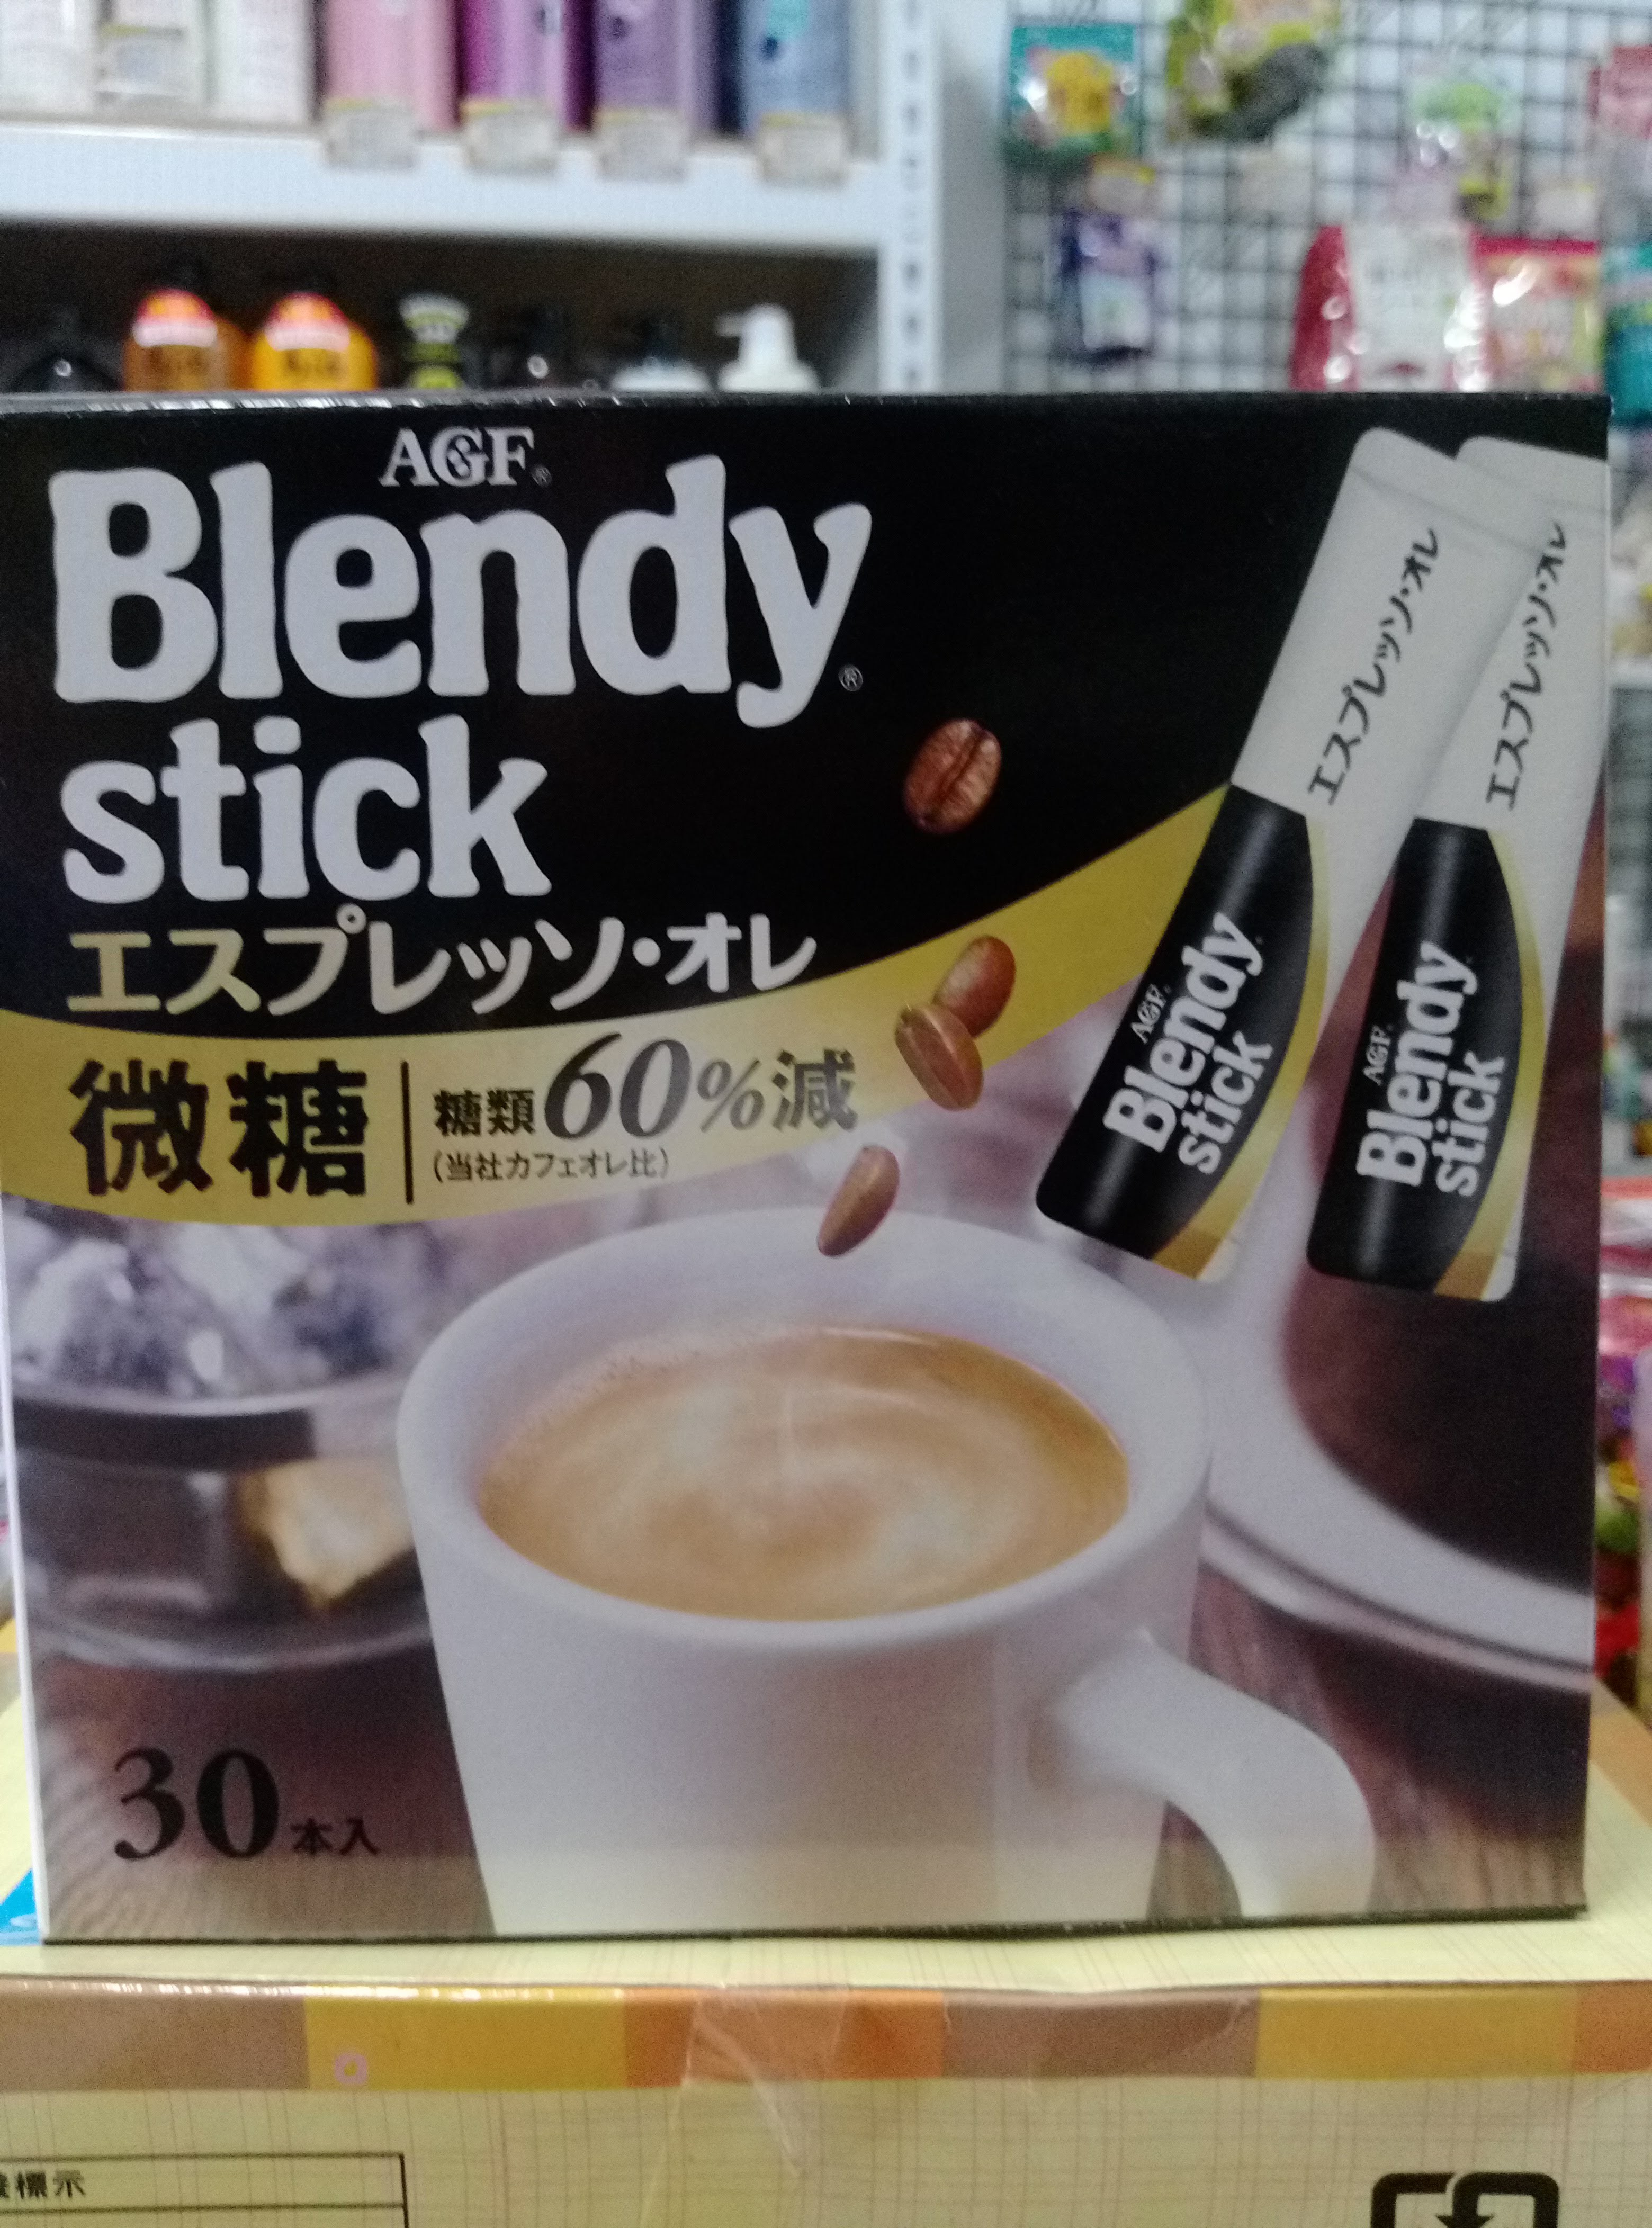 日本AGF Blendy Stick義式濃縮拿鐵咖啡30本